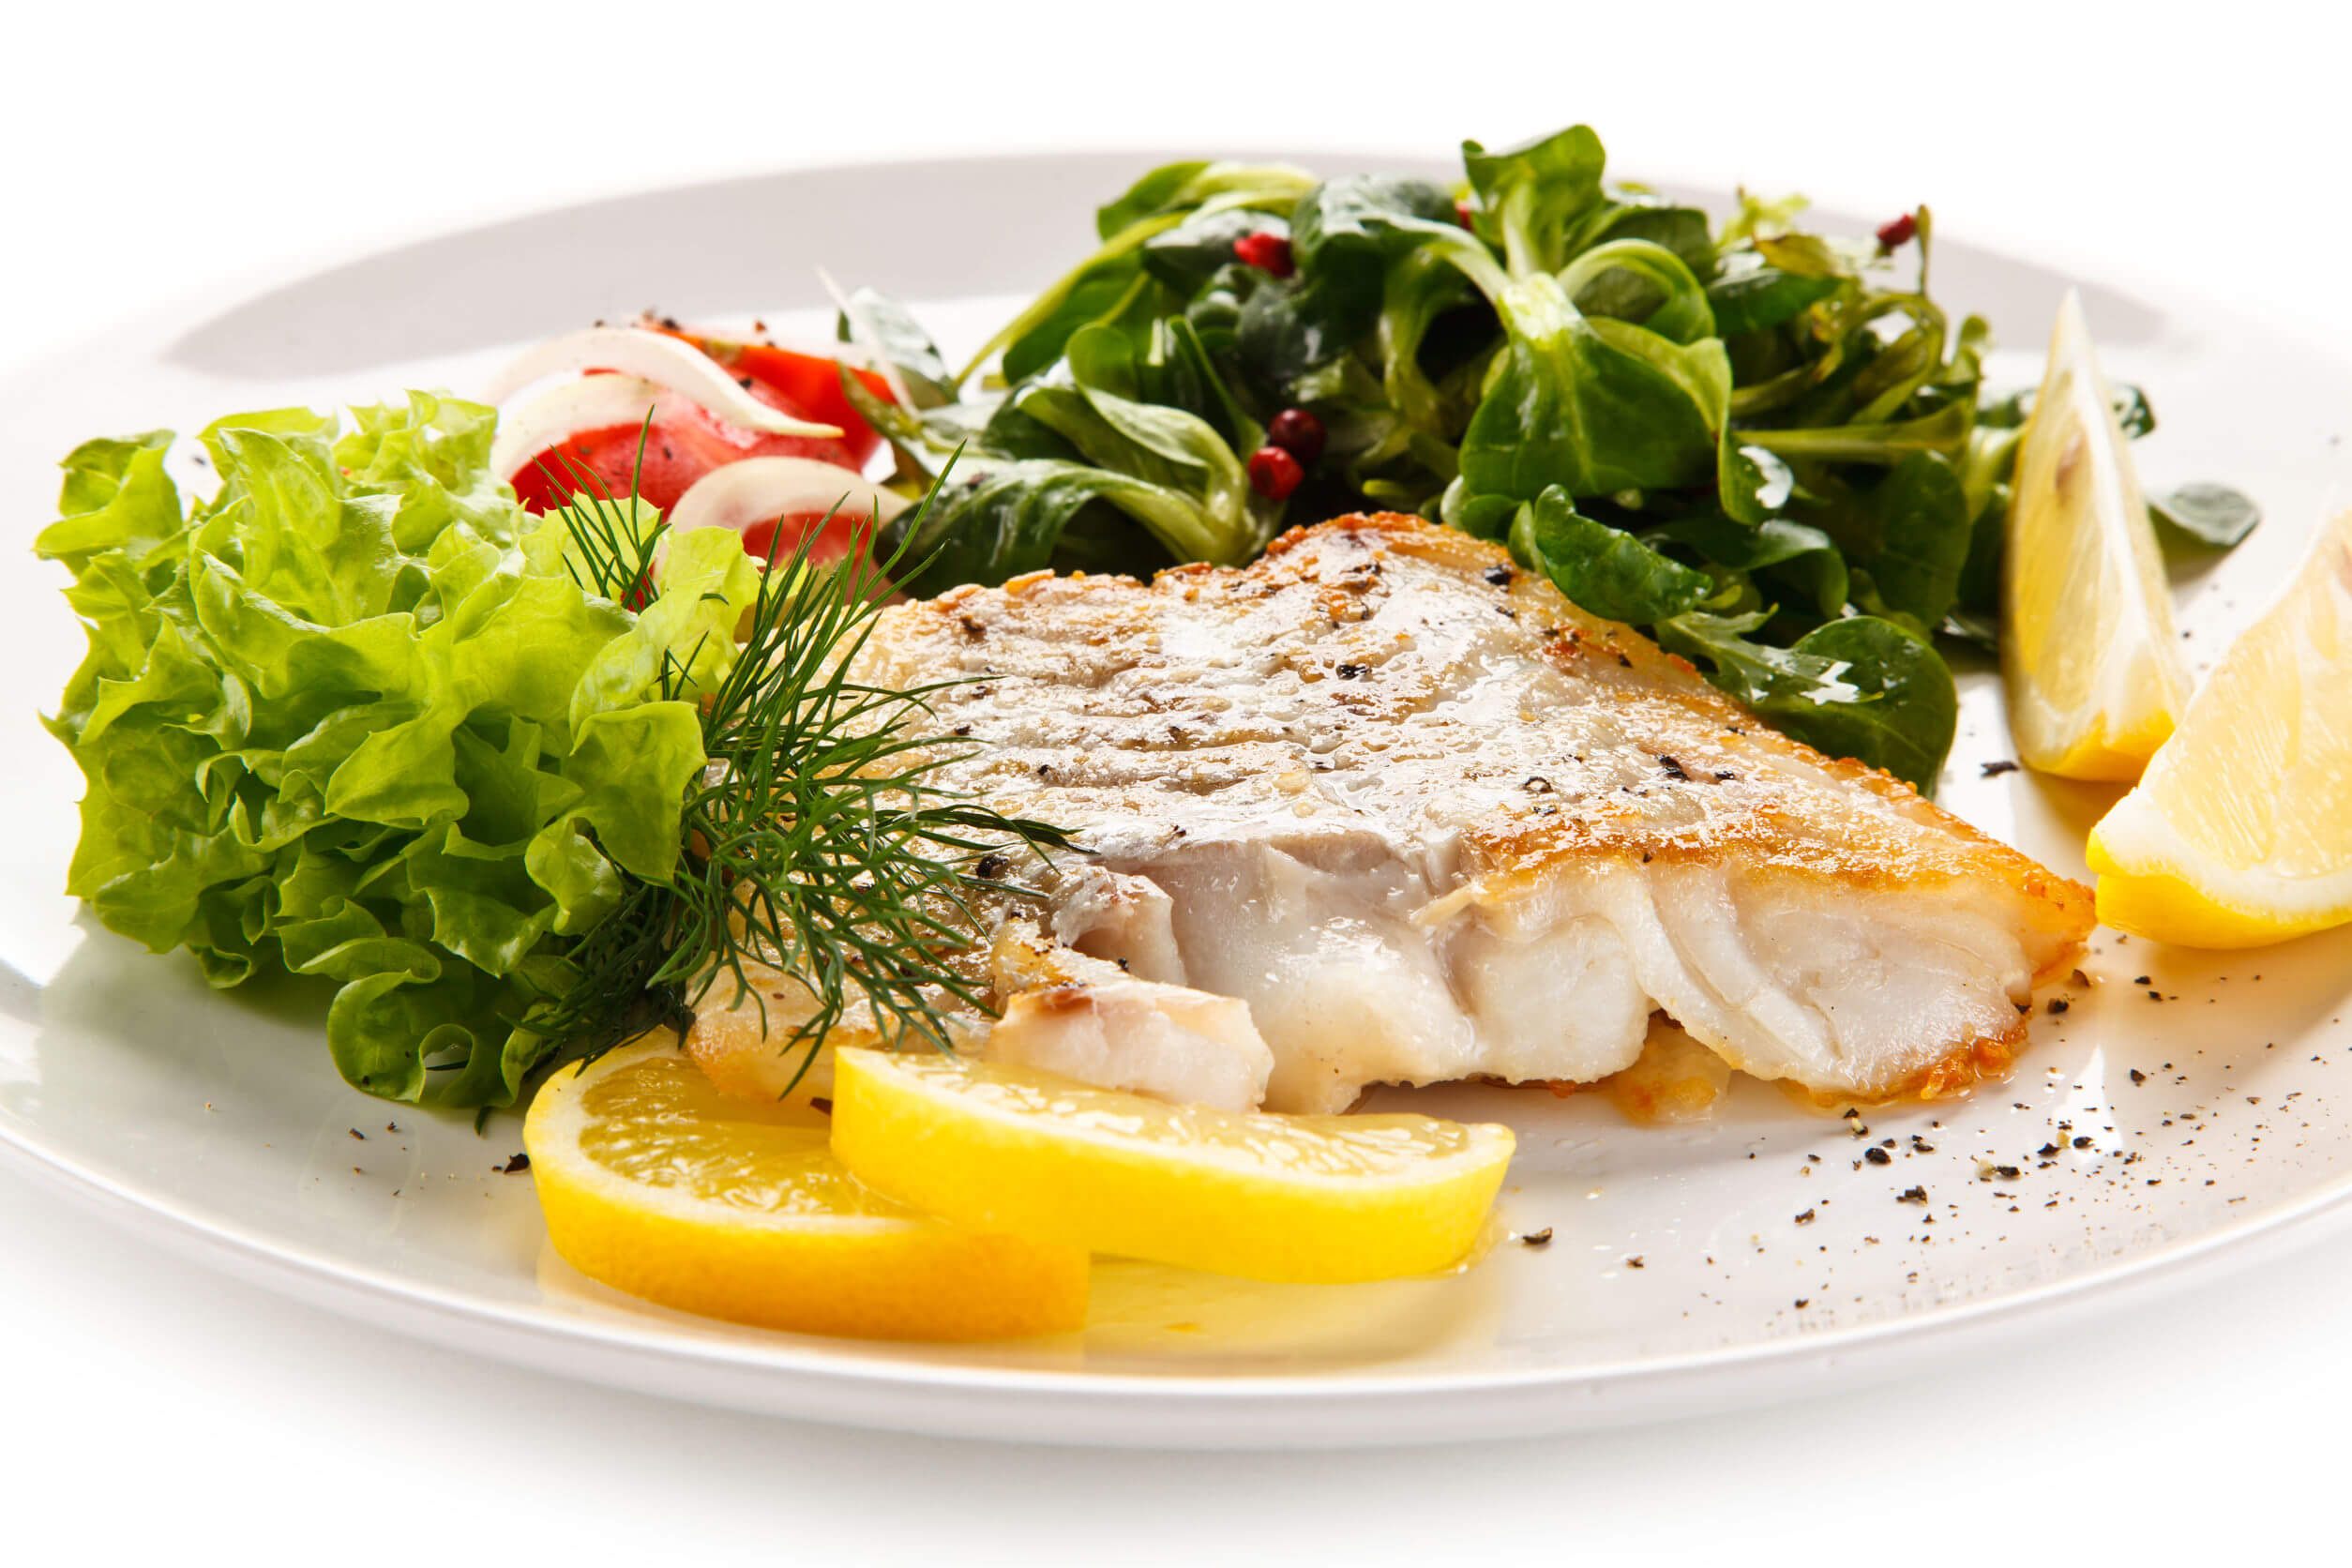 Il pesce è un alimento che aiuta a seguire una dieta equilibrata.